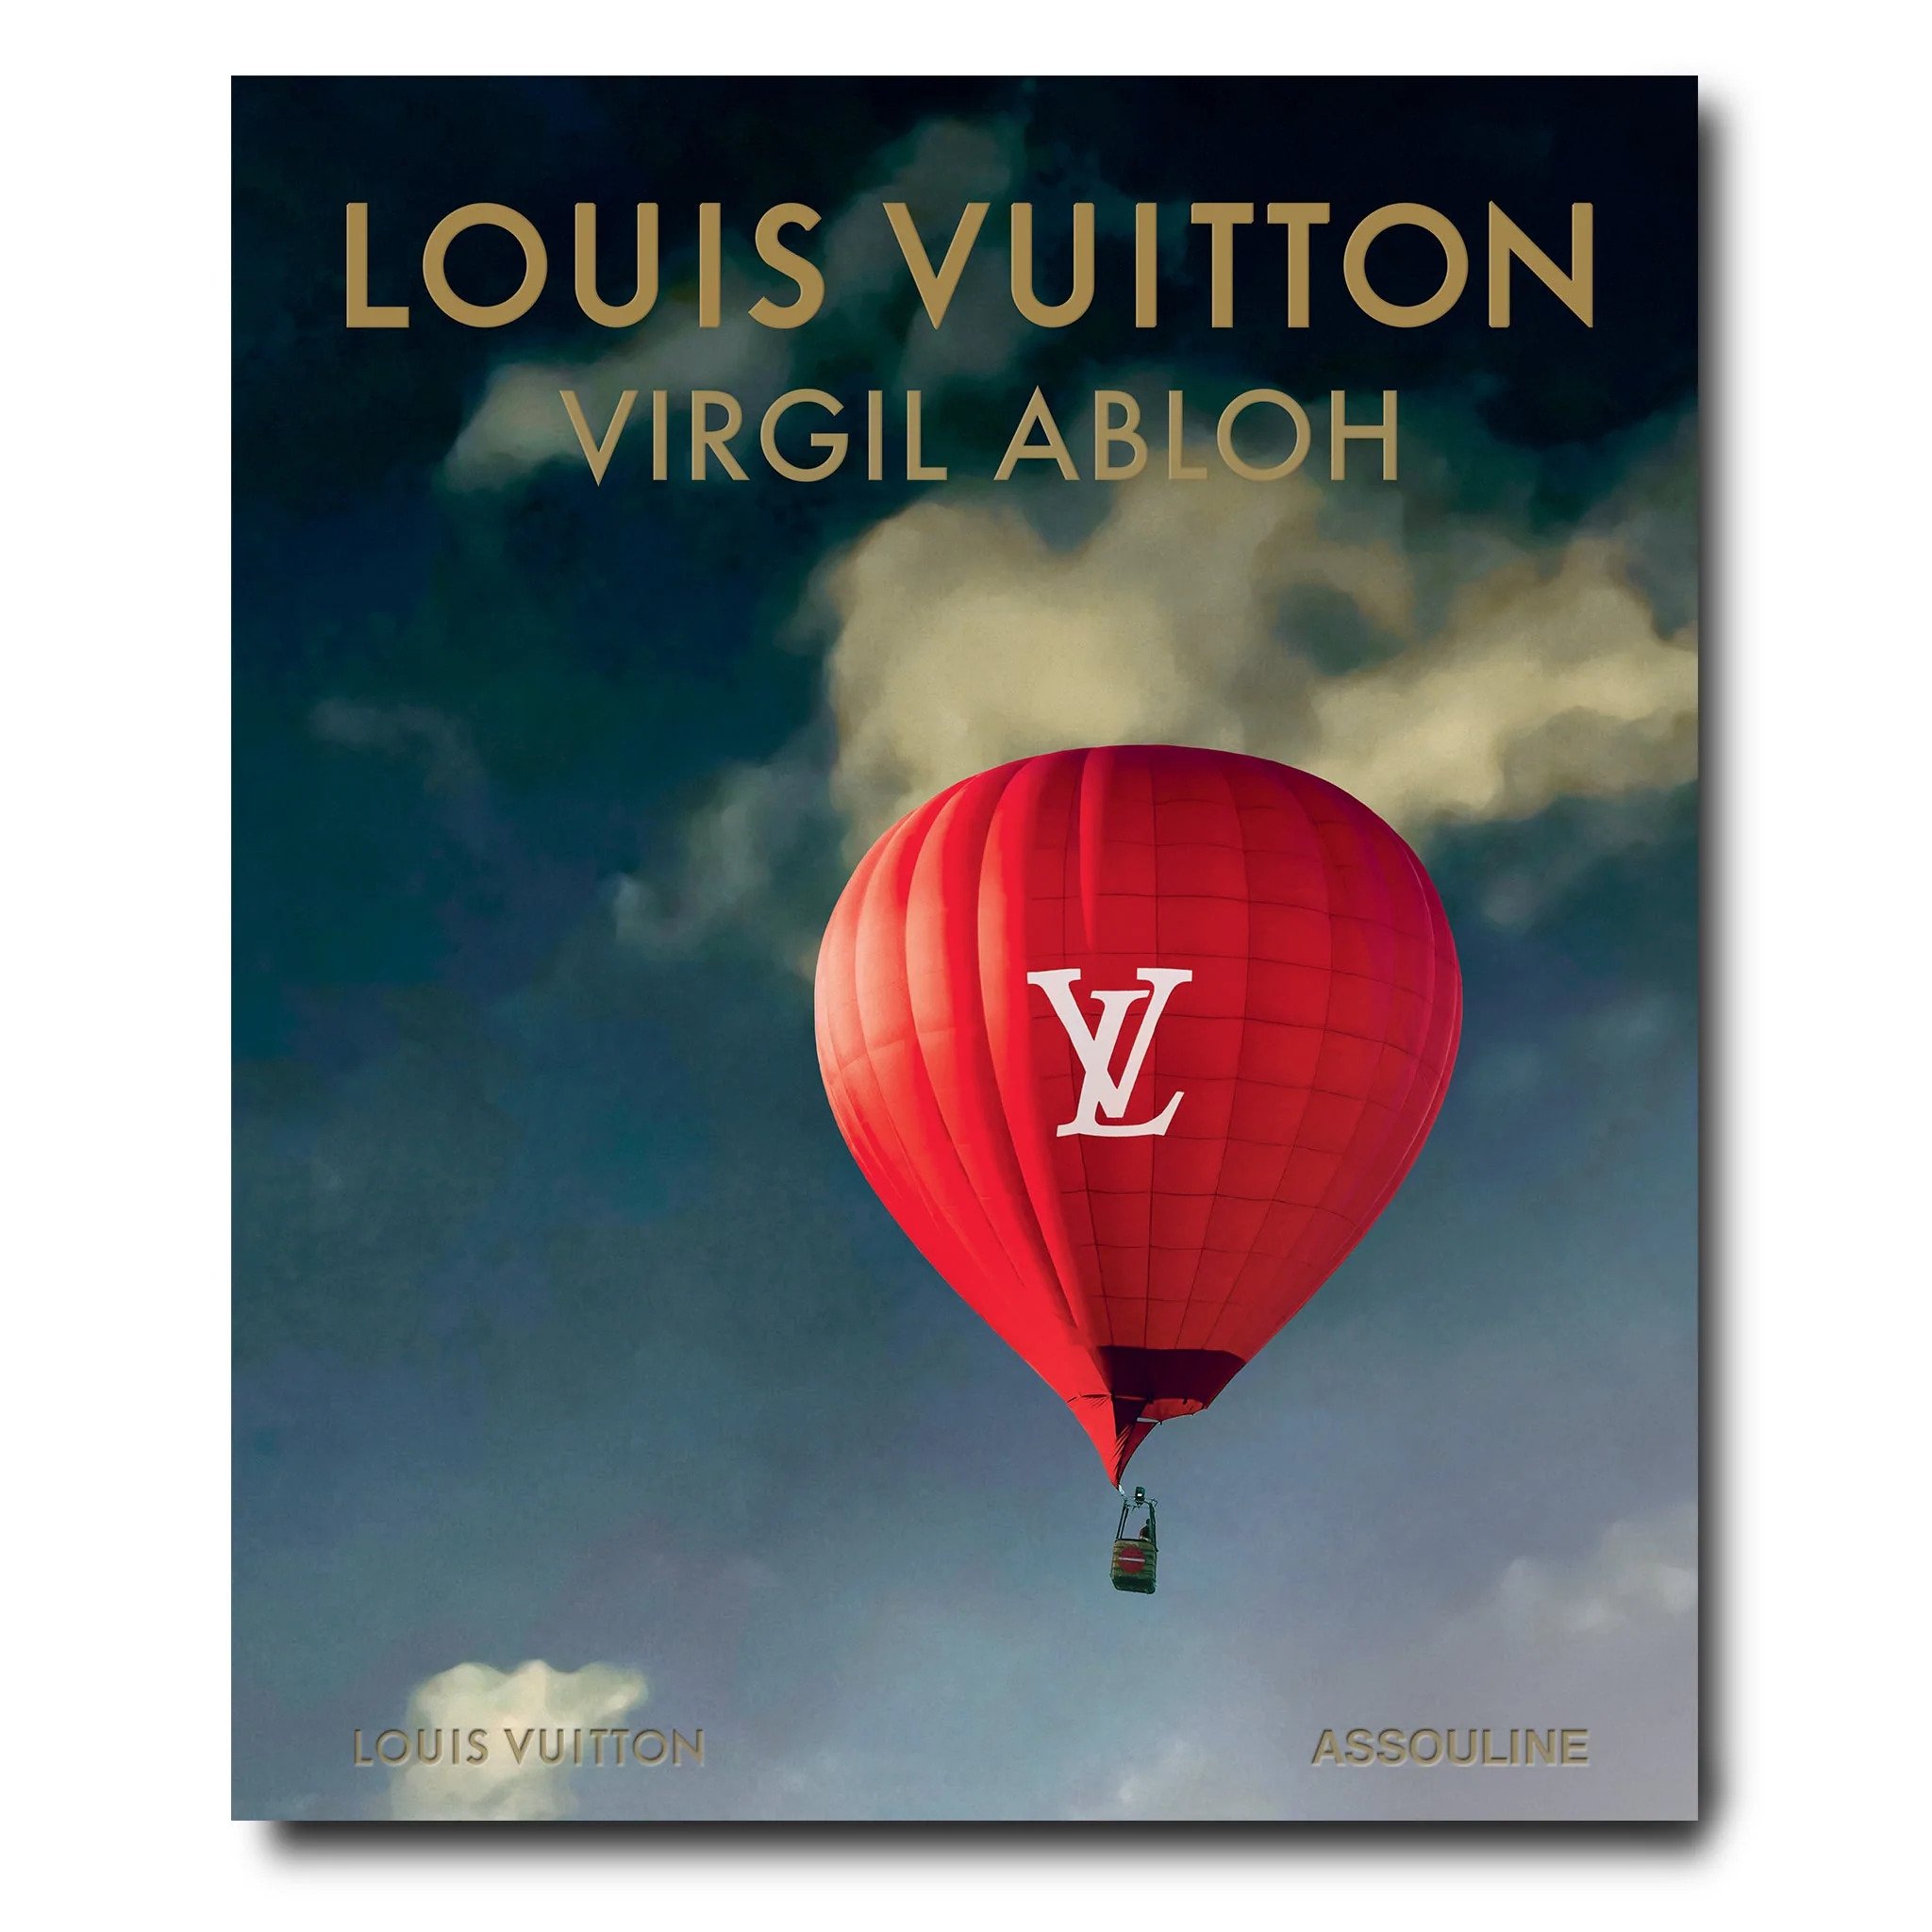 Assouline’s Latest Book Celebrates Louis Vuitton Under Virgil Abloh